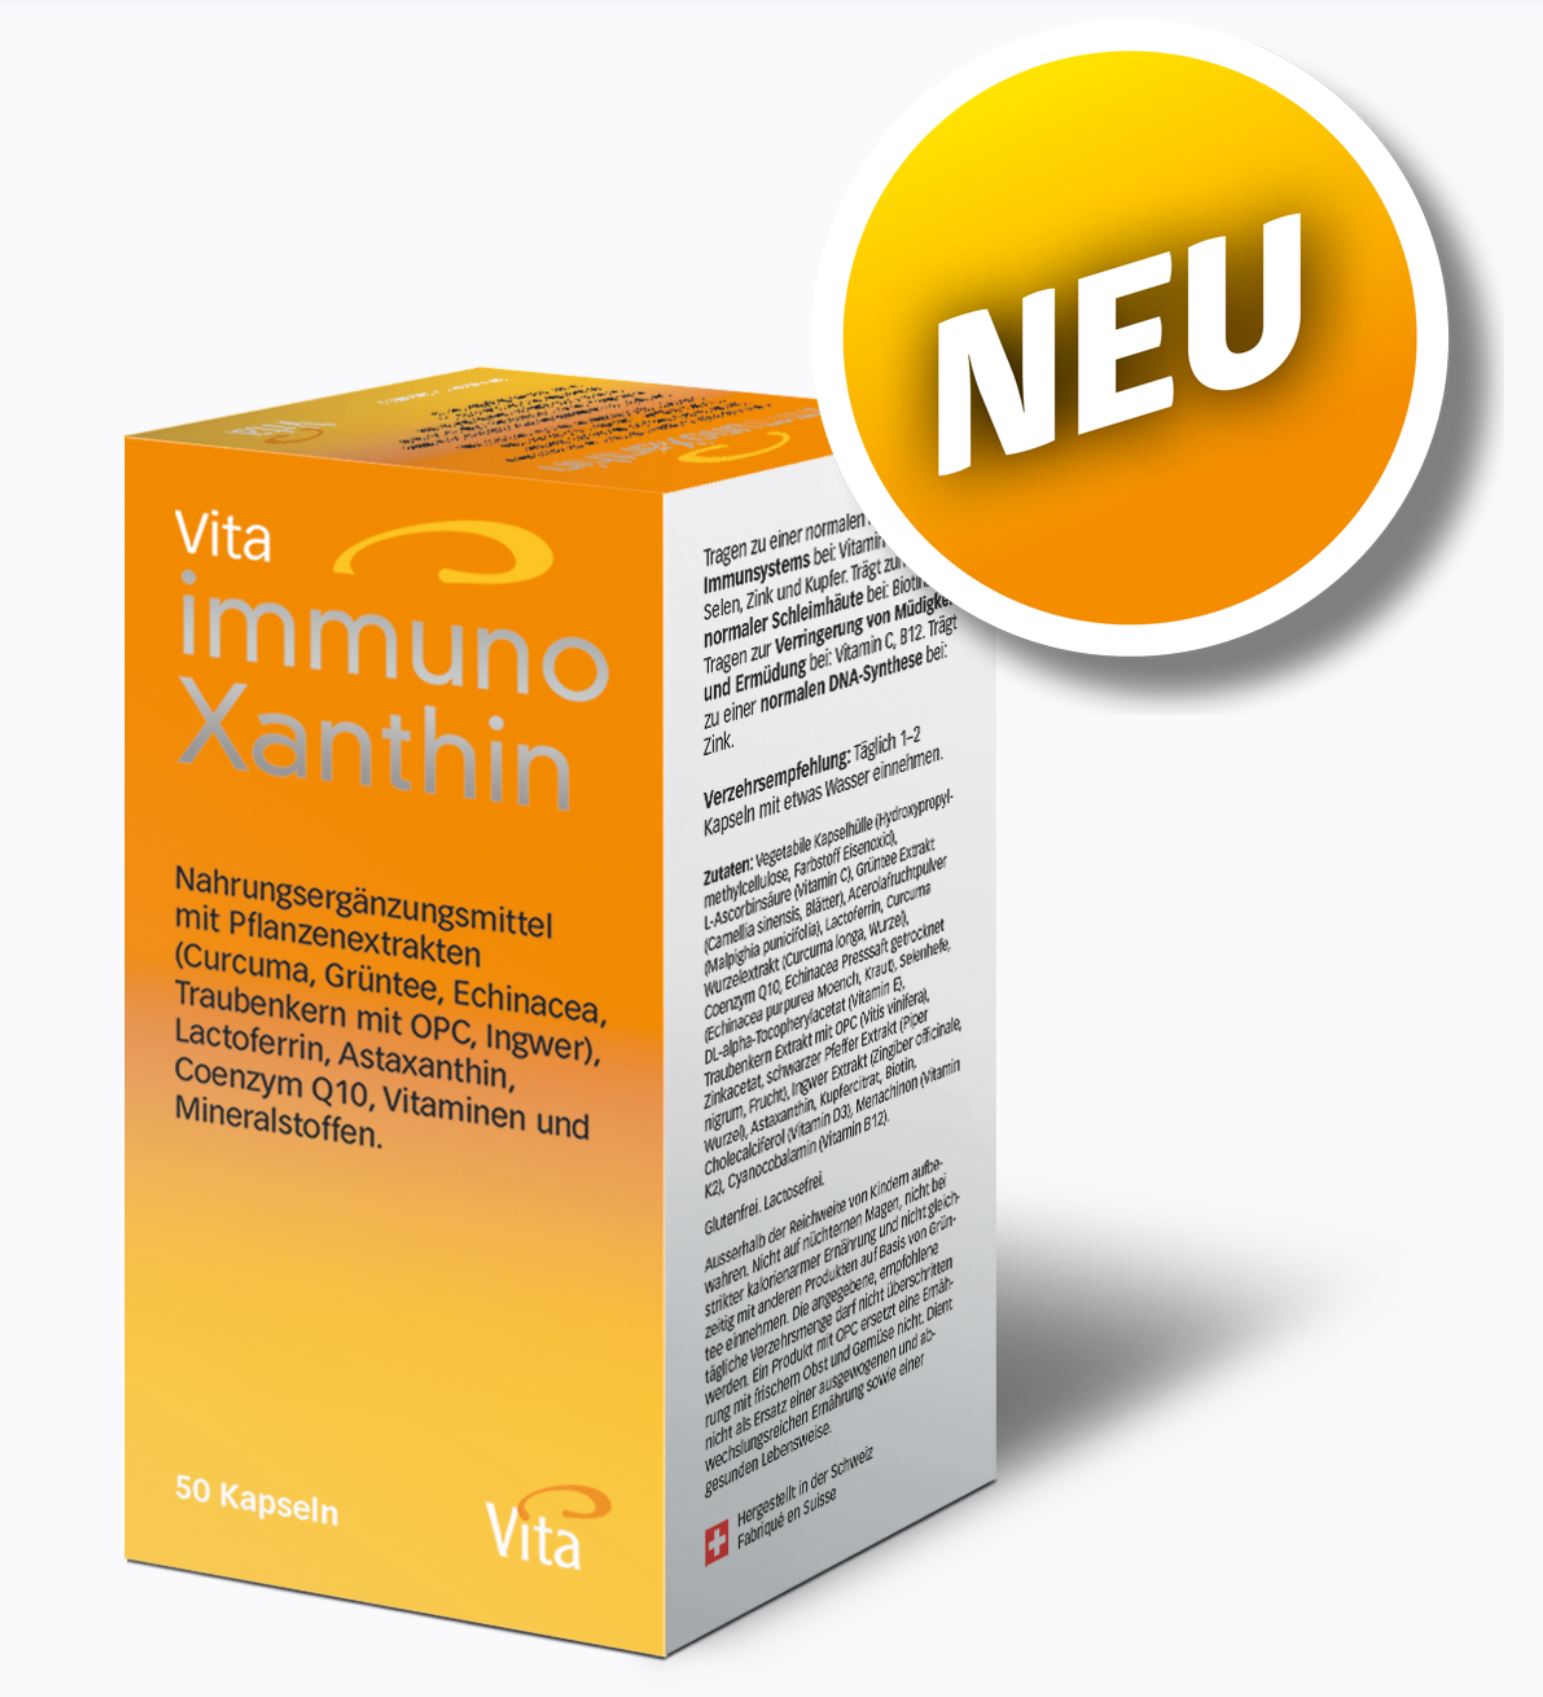 Vita immunoXanthin